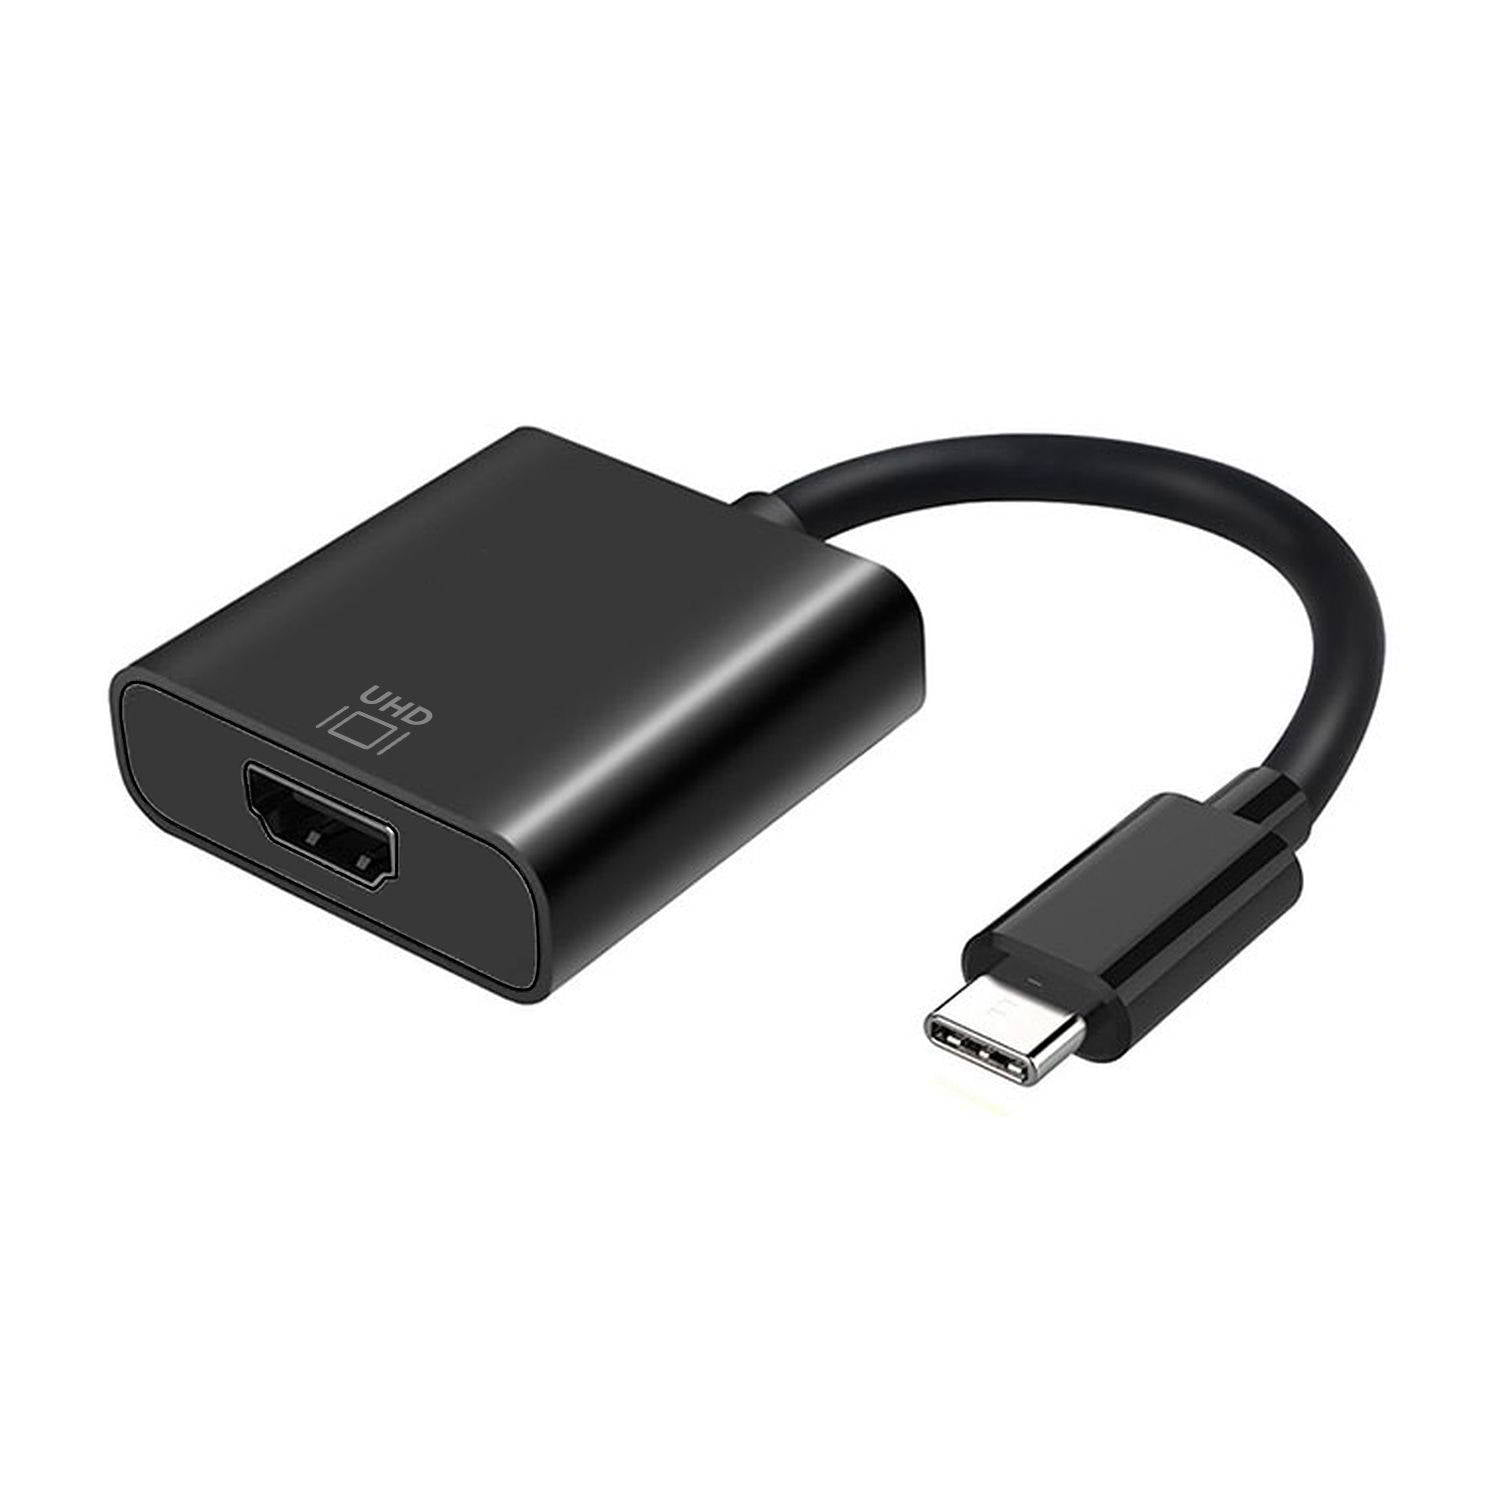 119363 cable HDMI 3 m HDMI tipo A (Estándar) Negro